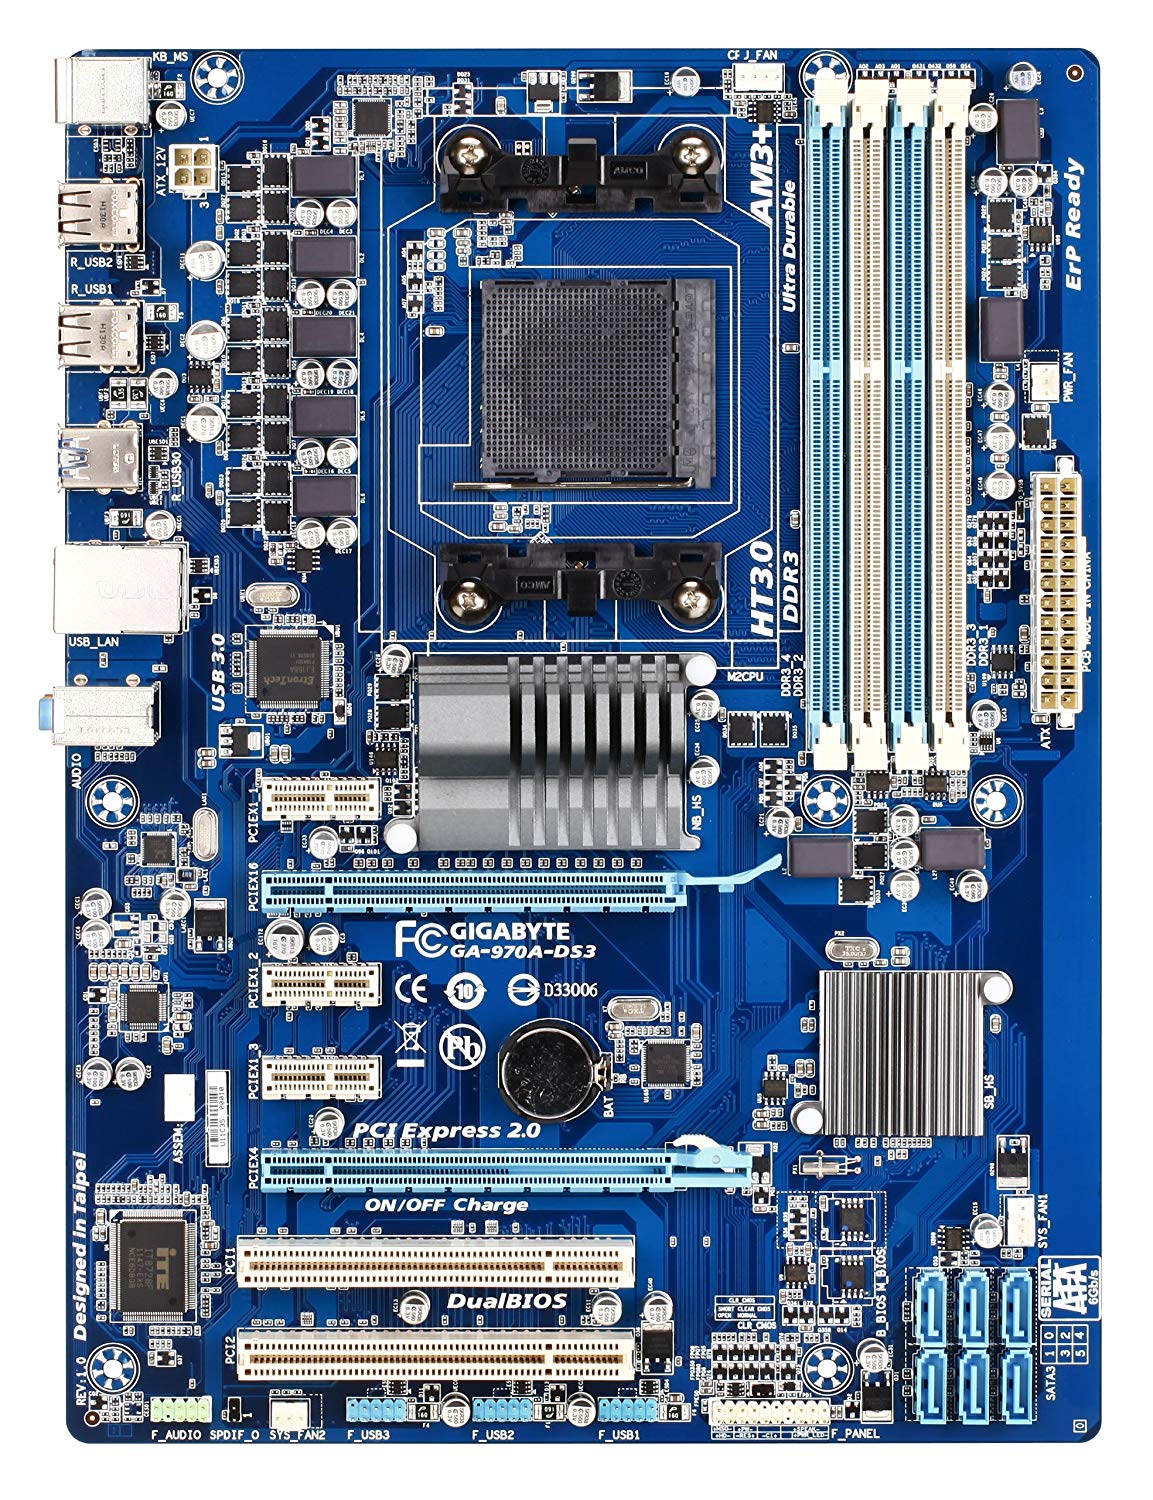 Gigabyte GA-970A-DS3 AM3+ AMD 970 SATA 6Gb/s USB 3.0 ATX AMD